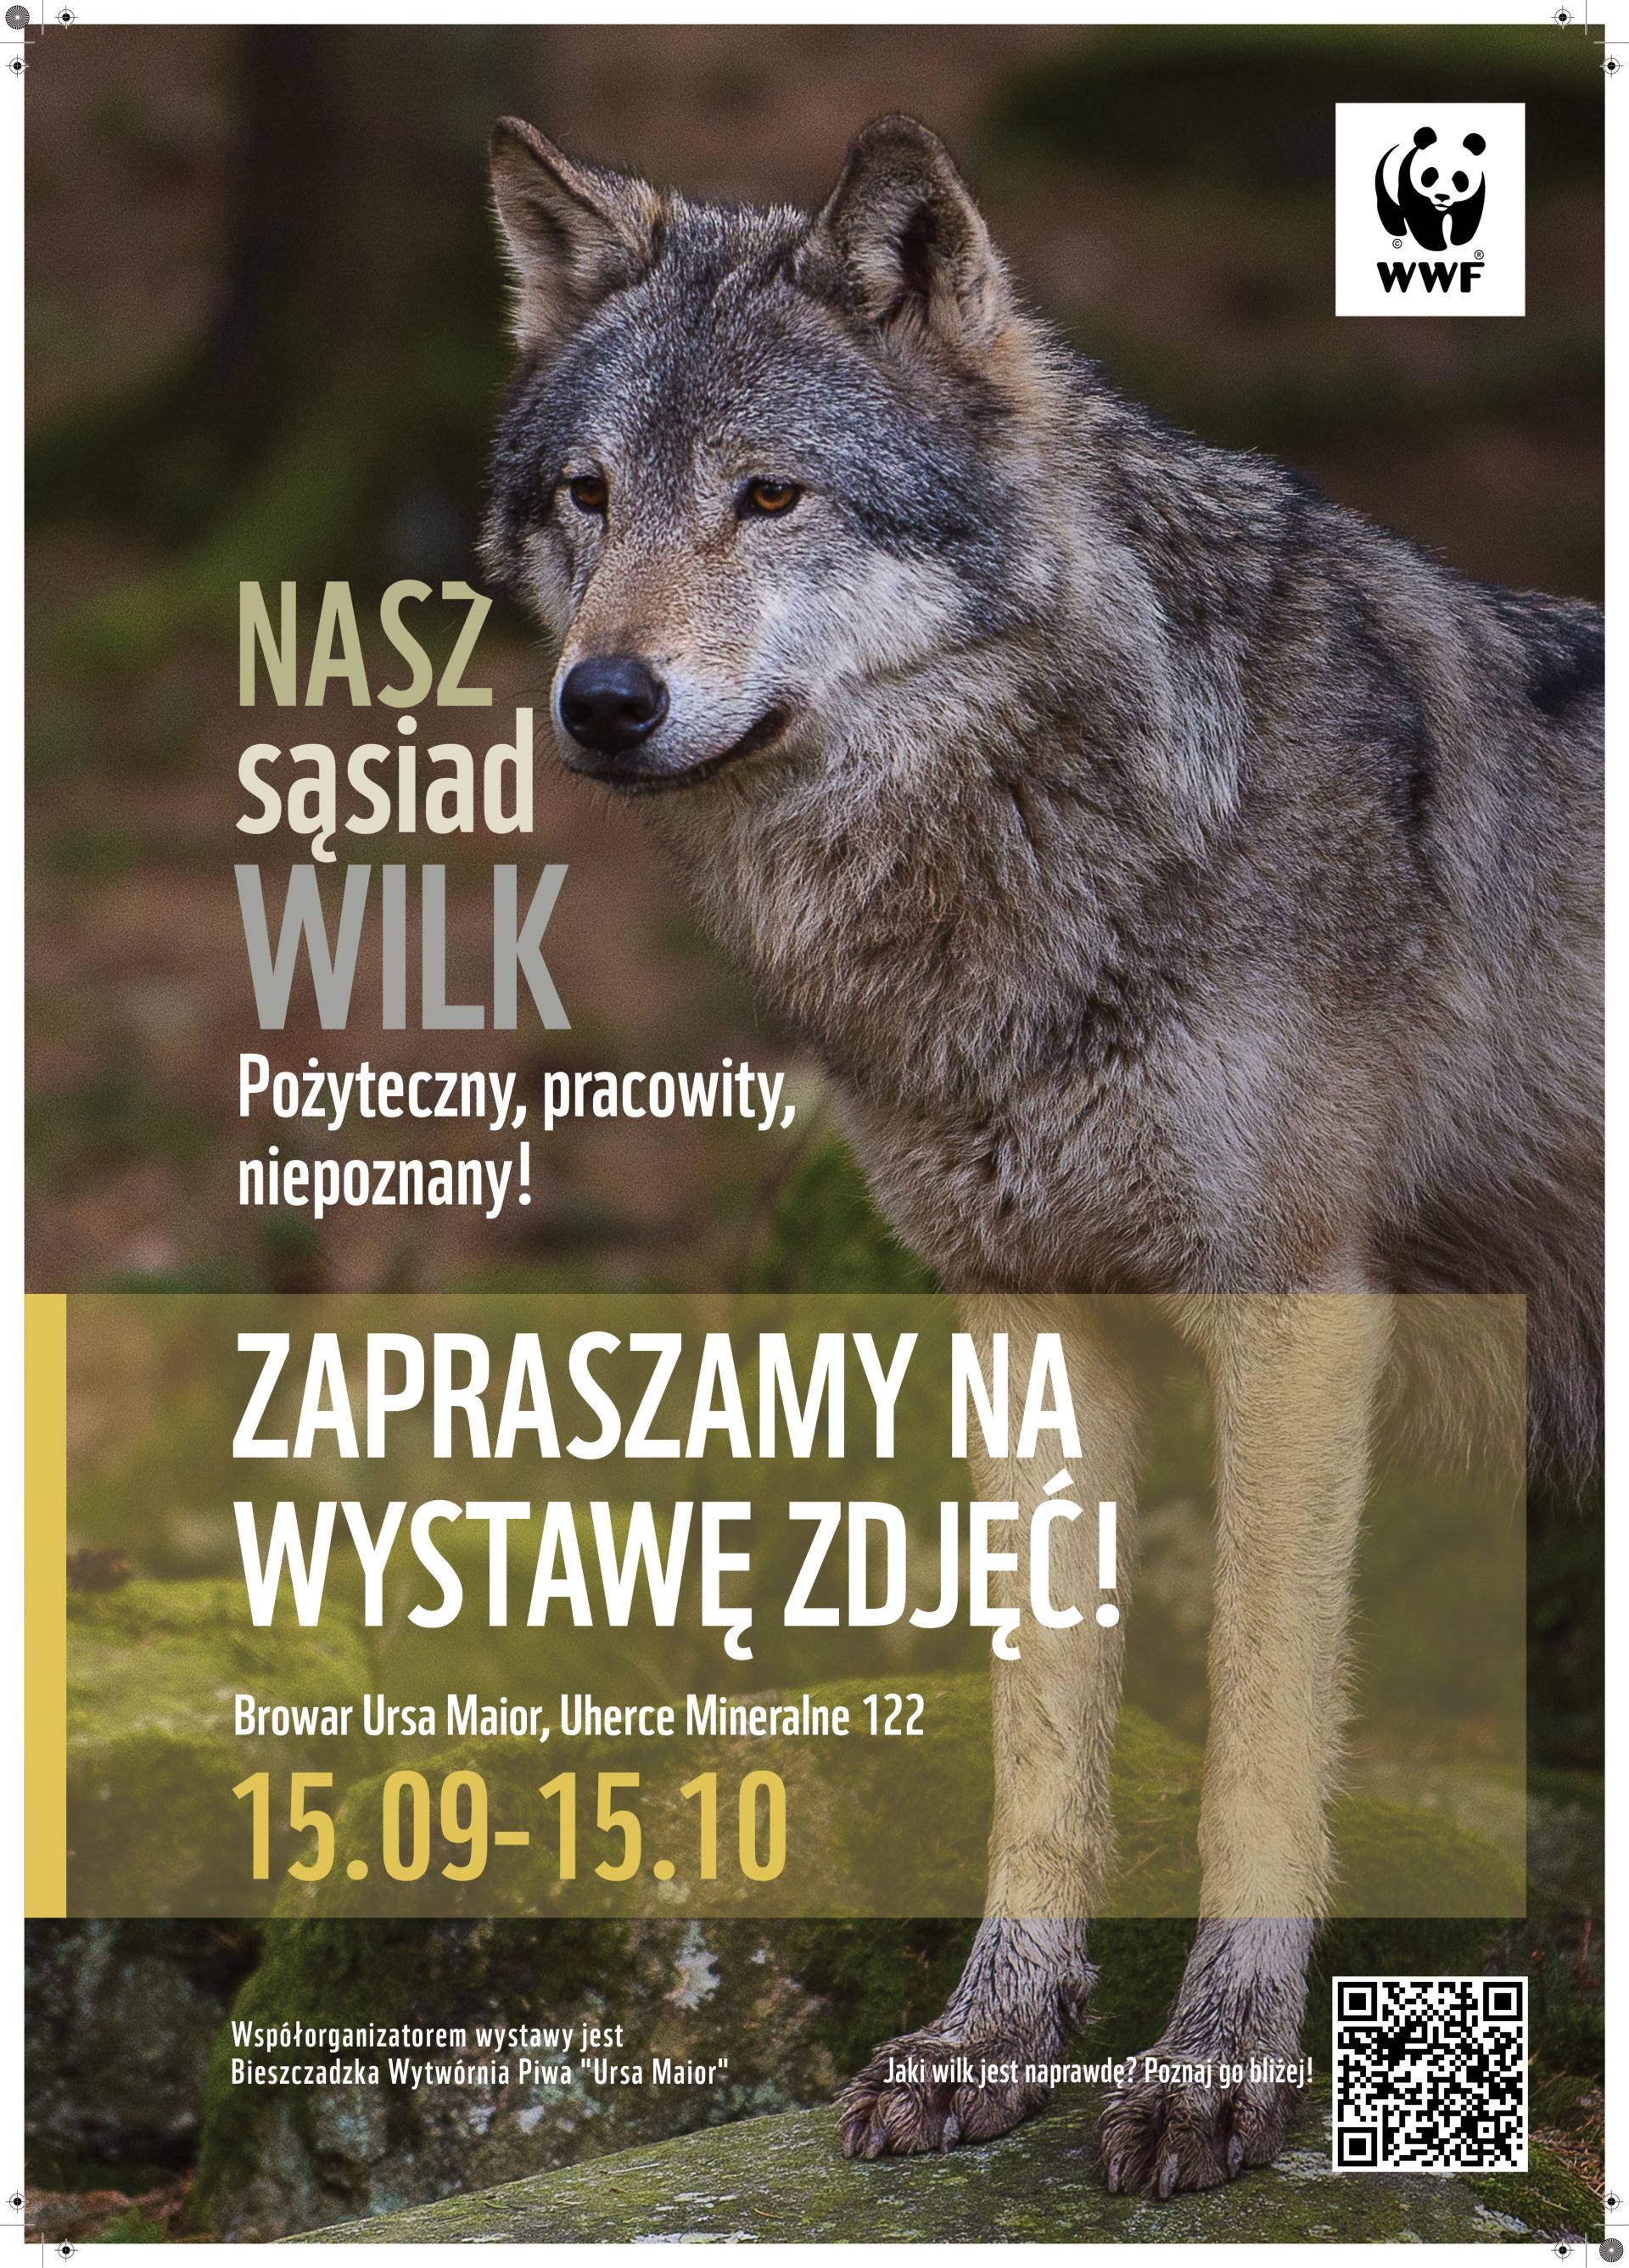 Wizerunek wilka na plakacie.